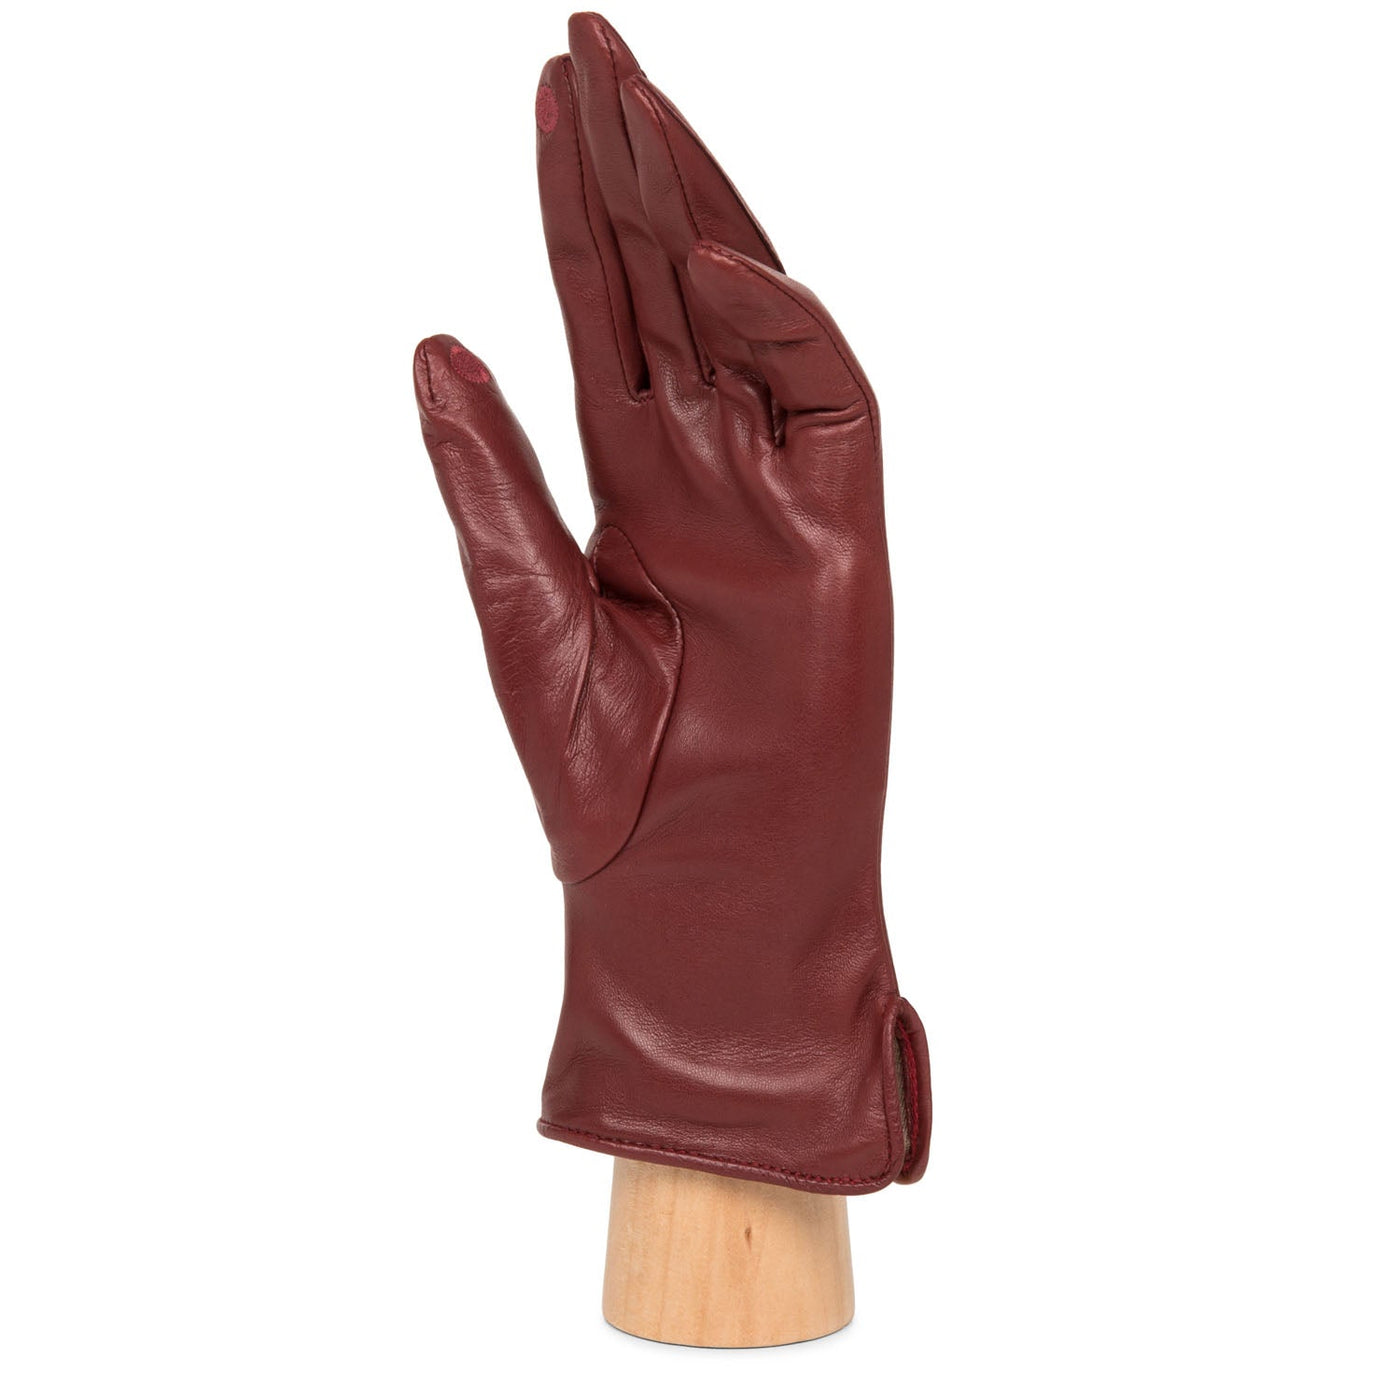 gloves - accessoires gants femme #couleur_rouge